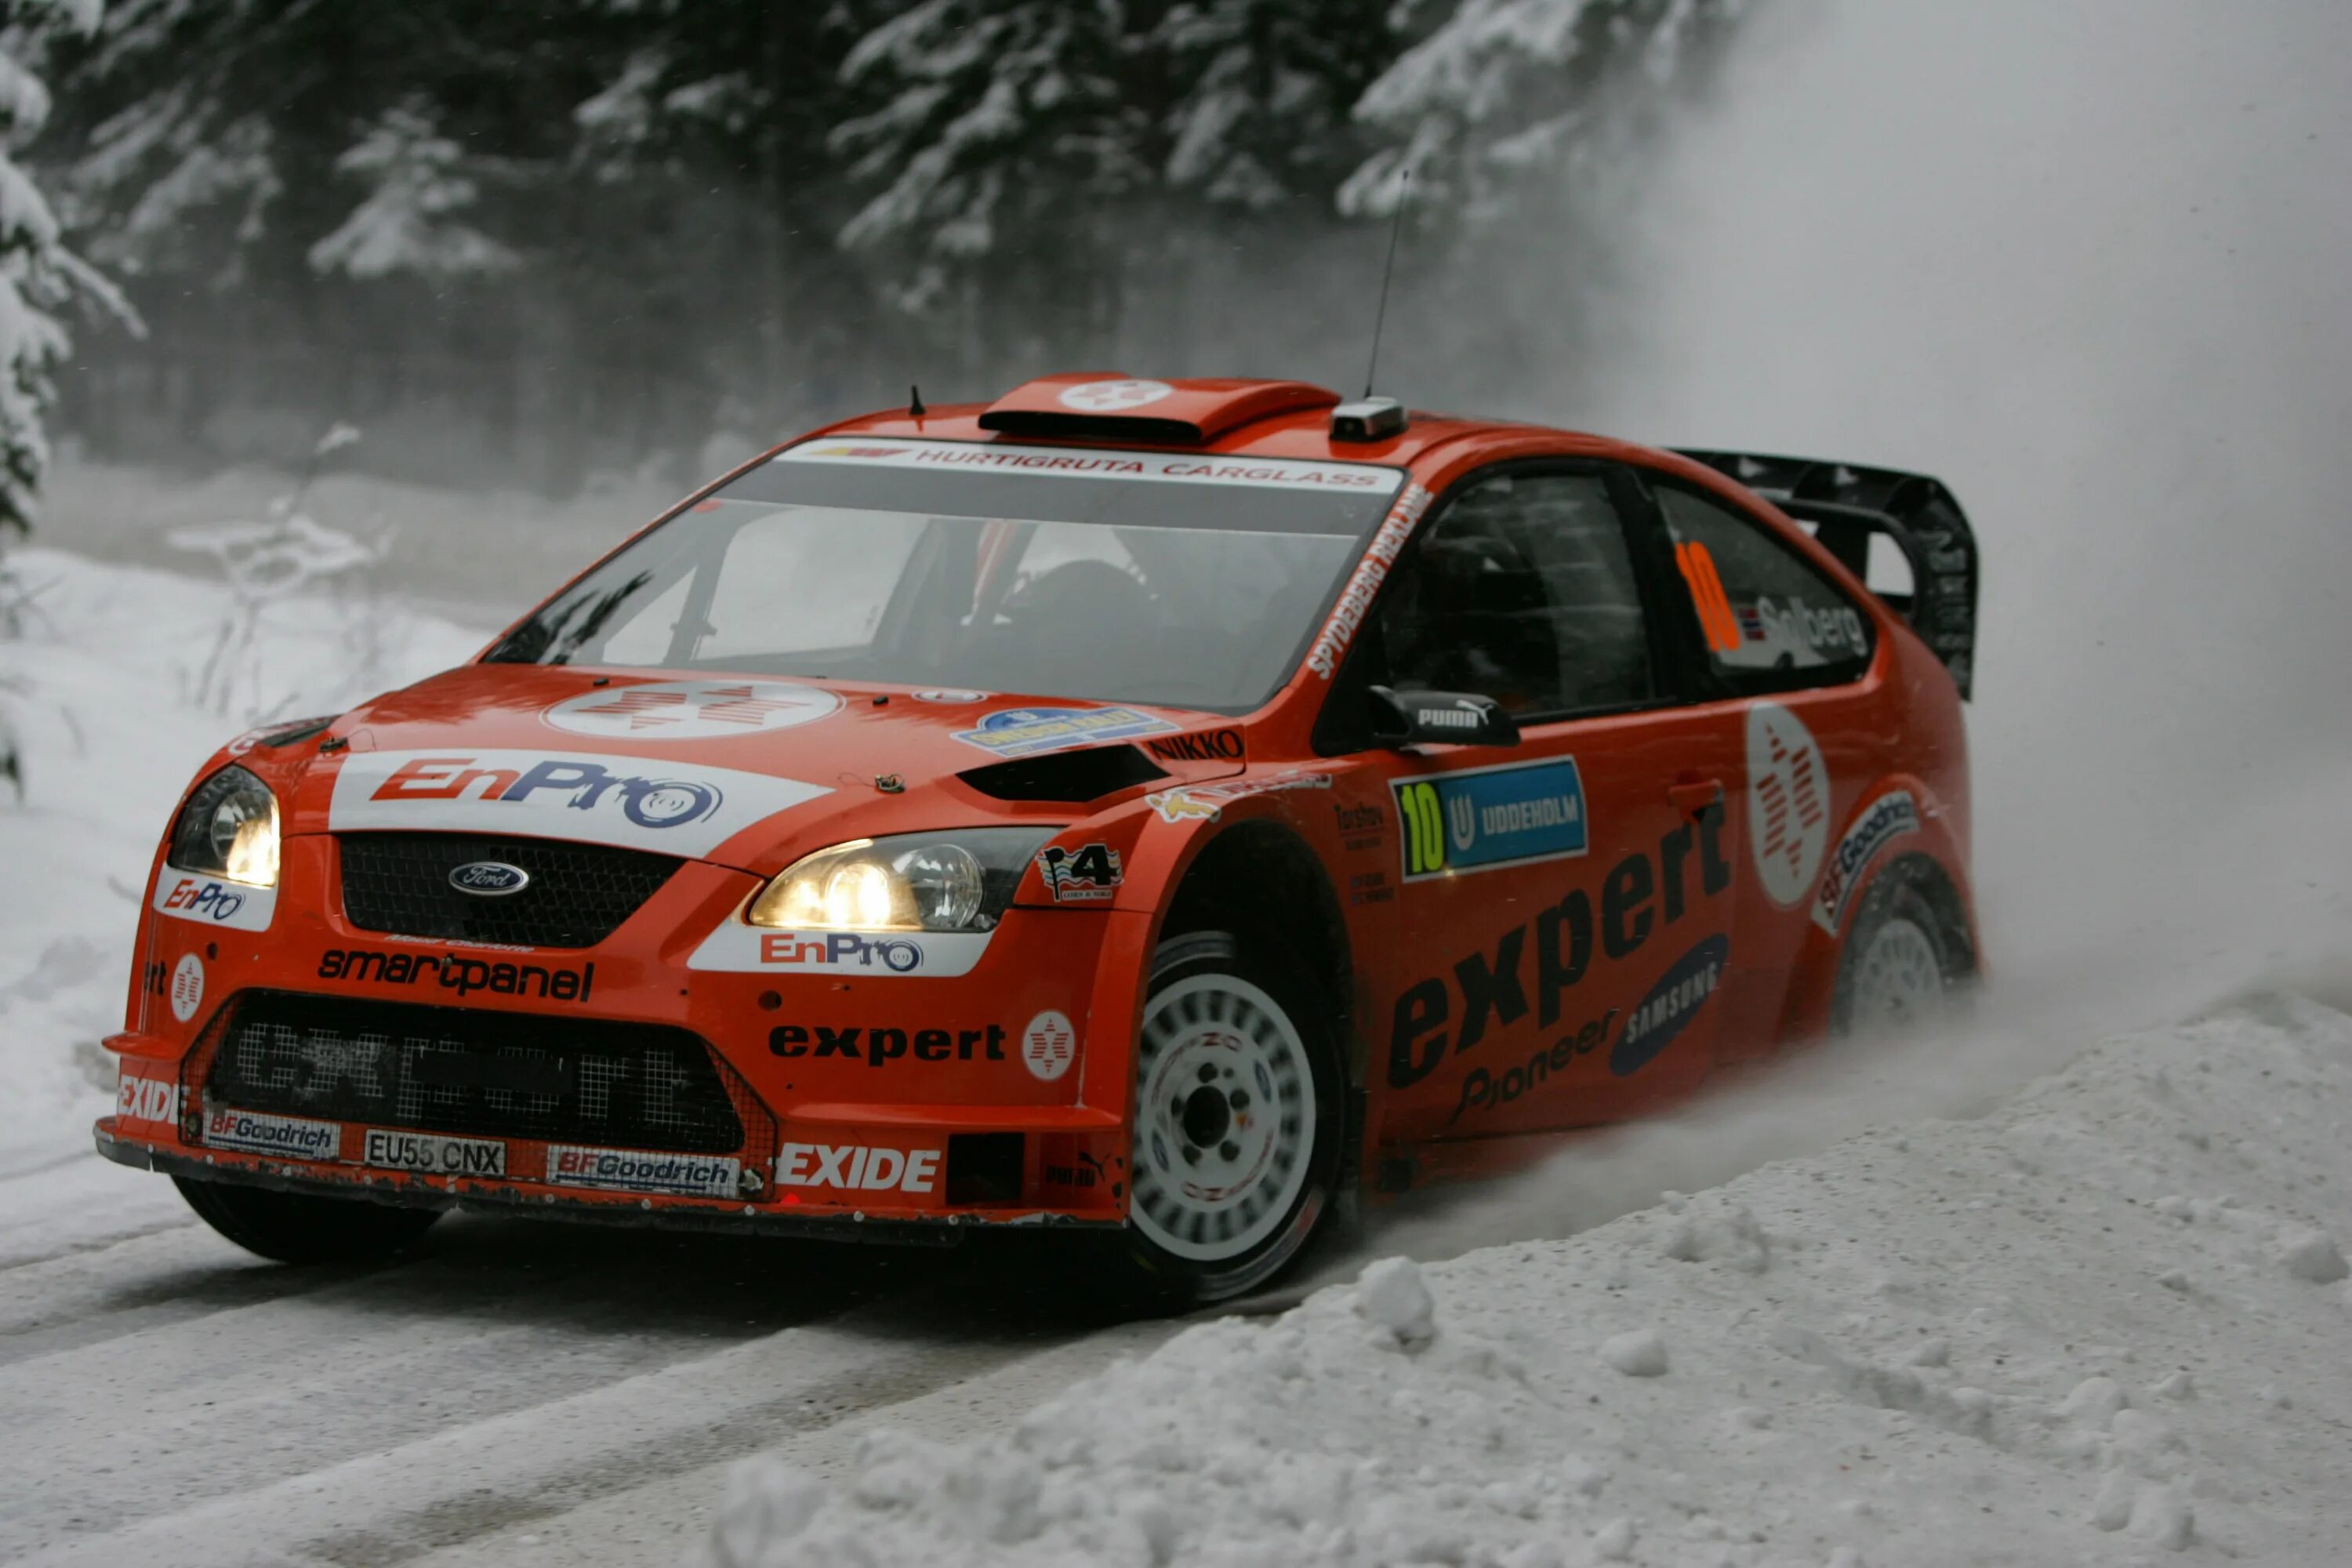 Топ ралли. Вольво ралли ралли 940. Nissan Sunny Rally WRC. Ралли Формоза 2002. Ралли Формоза 2001.